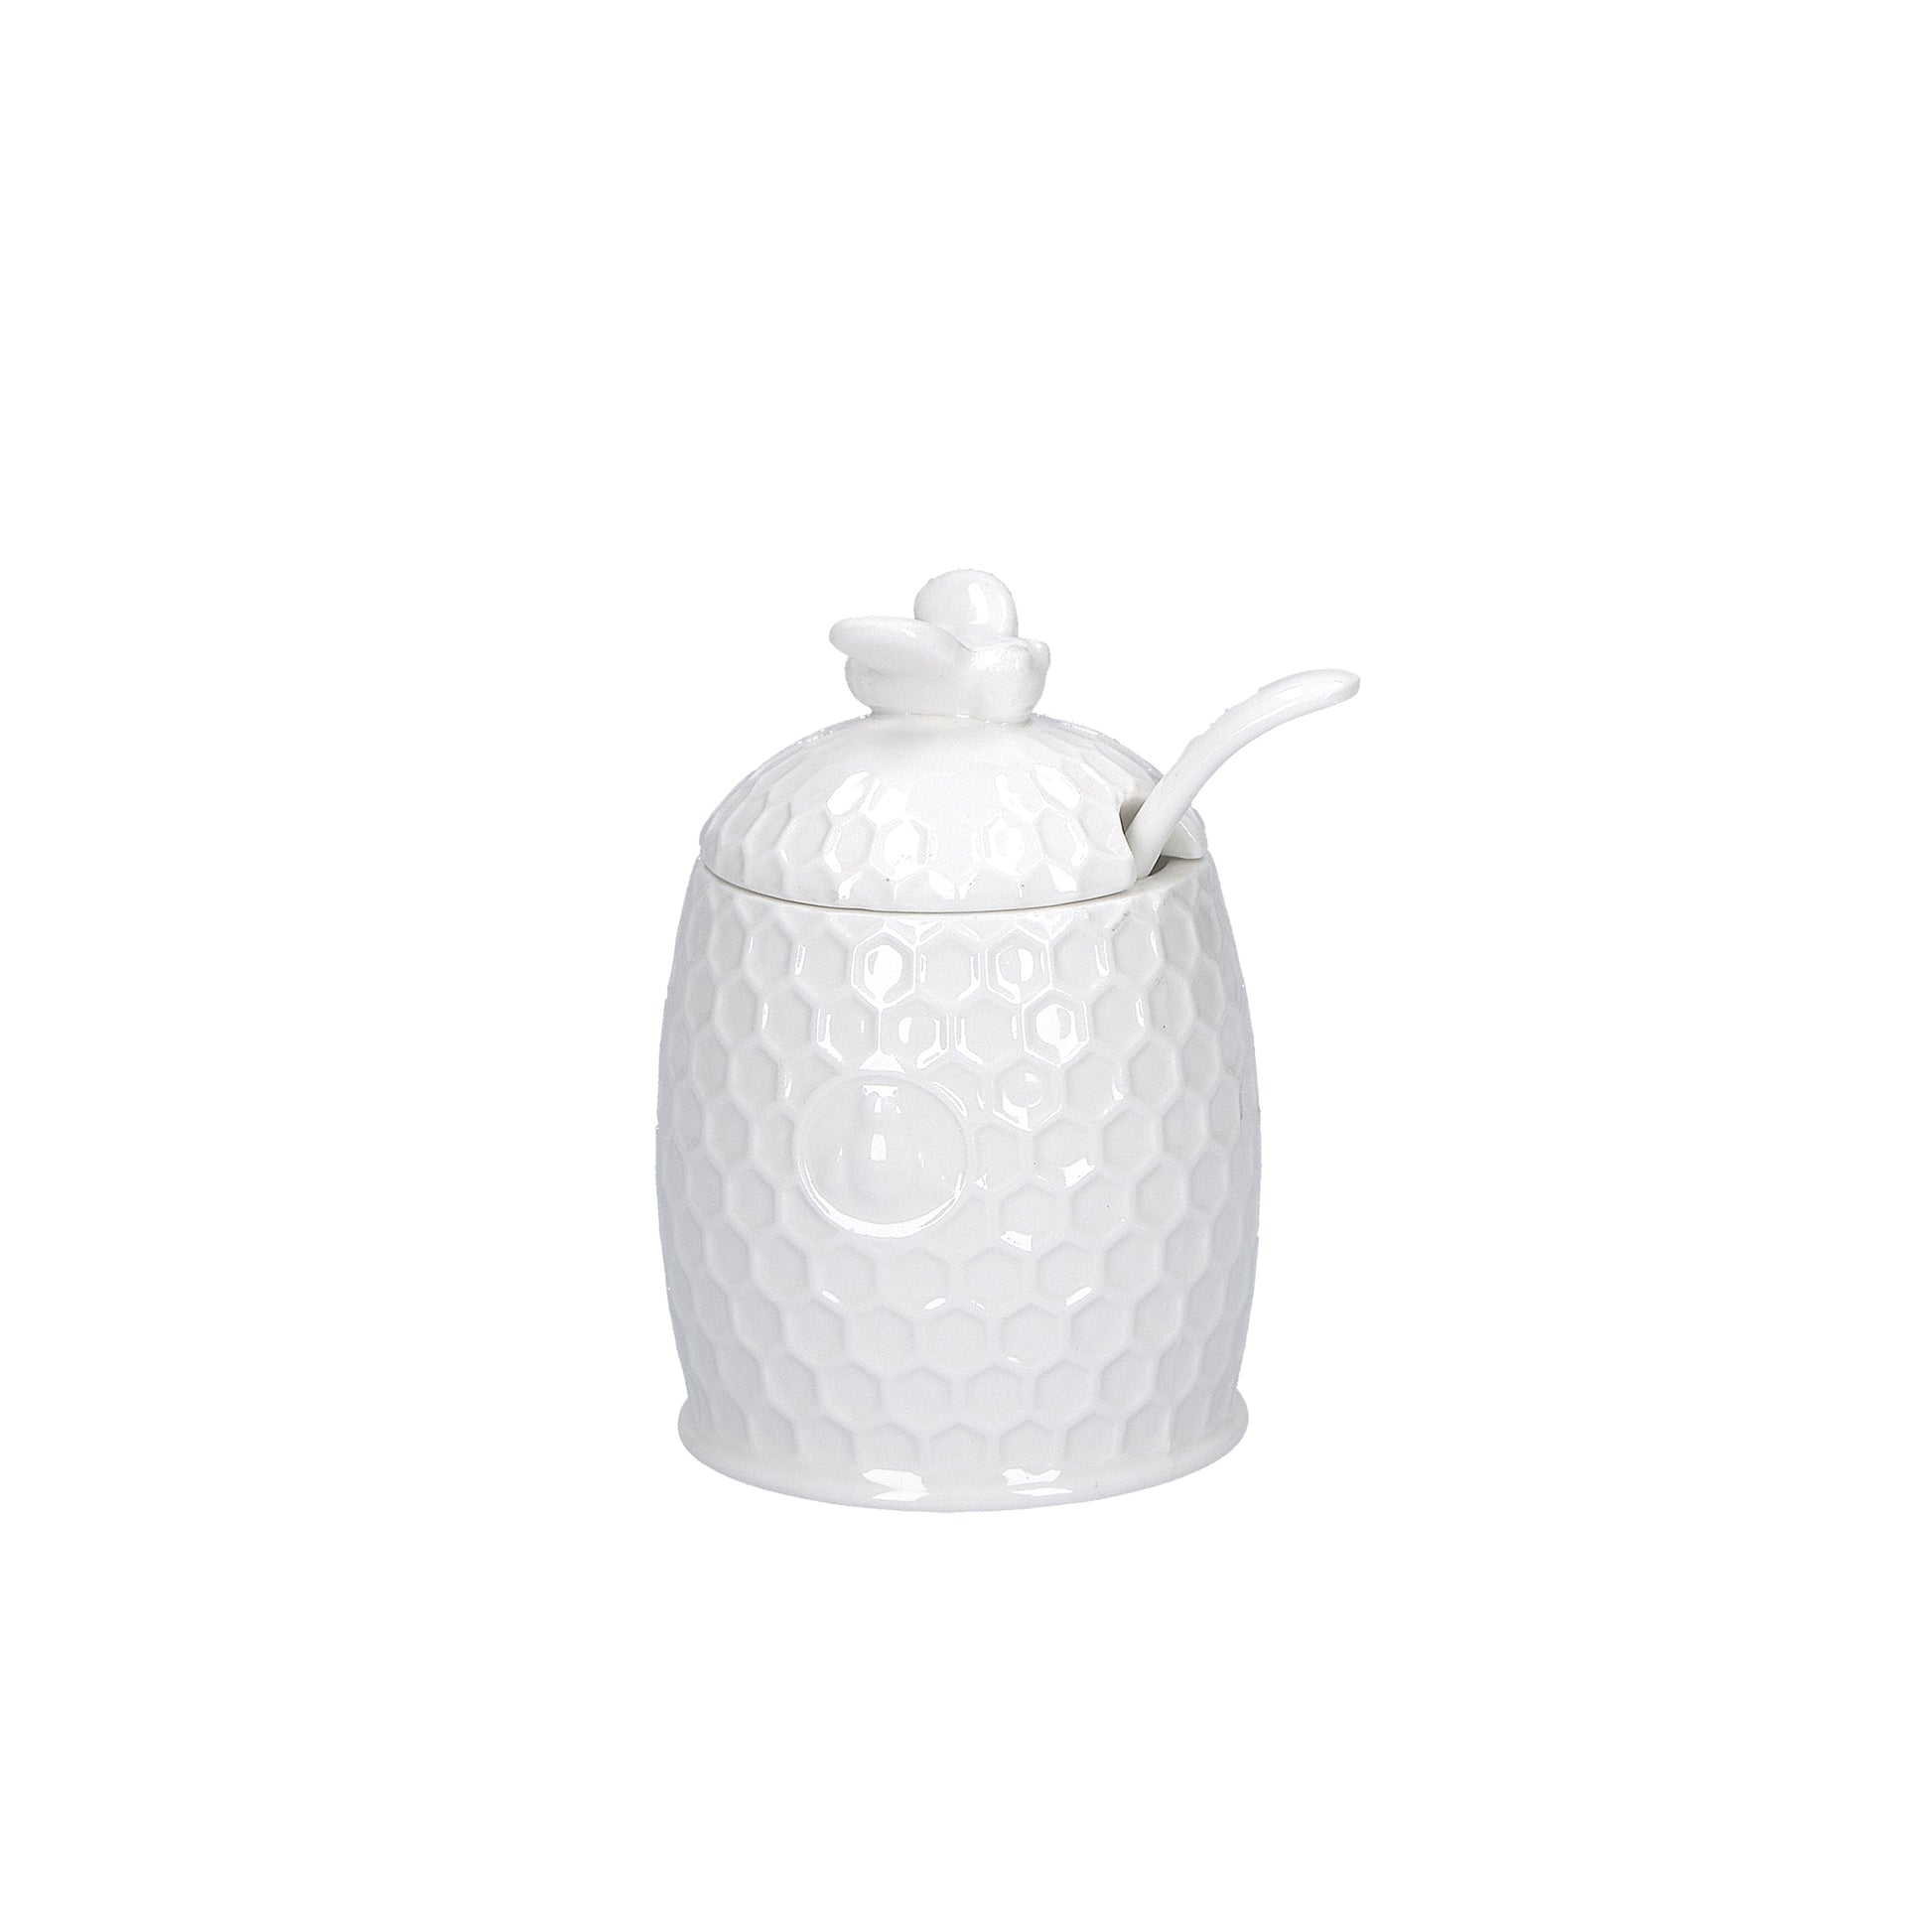 Zuccheriera in porcellana bianca con cucchiaino. Dimensioni: h10 cm, Ø 6,5 Lavabile in lavastoviglie Utilizzabile in microonde Utilizzabile in forno tradizionale 